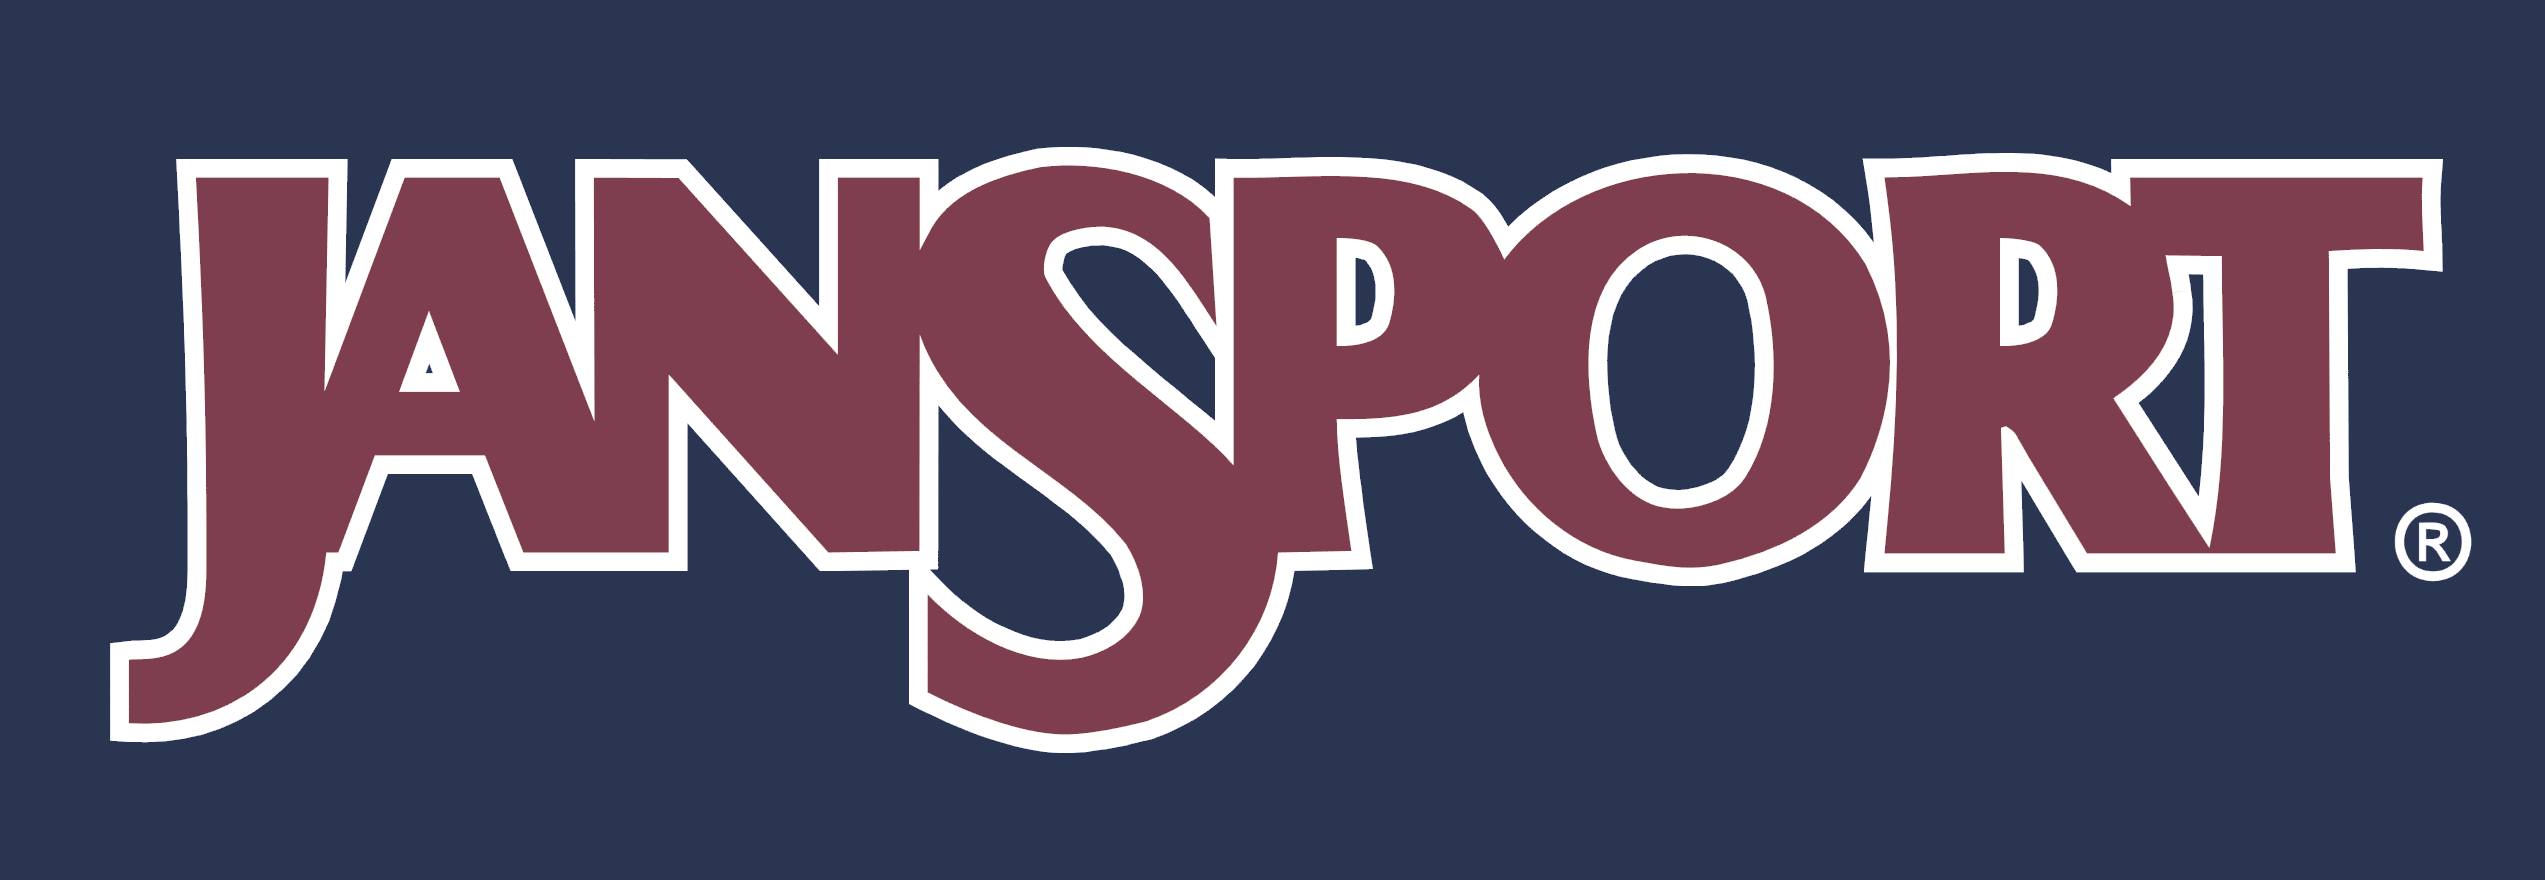 JanSport Logo - JanSport